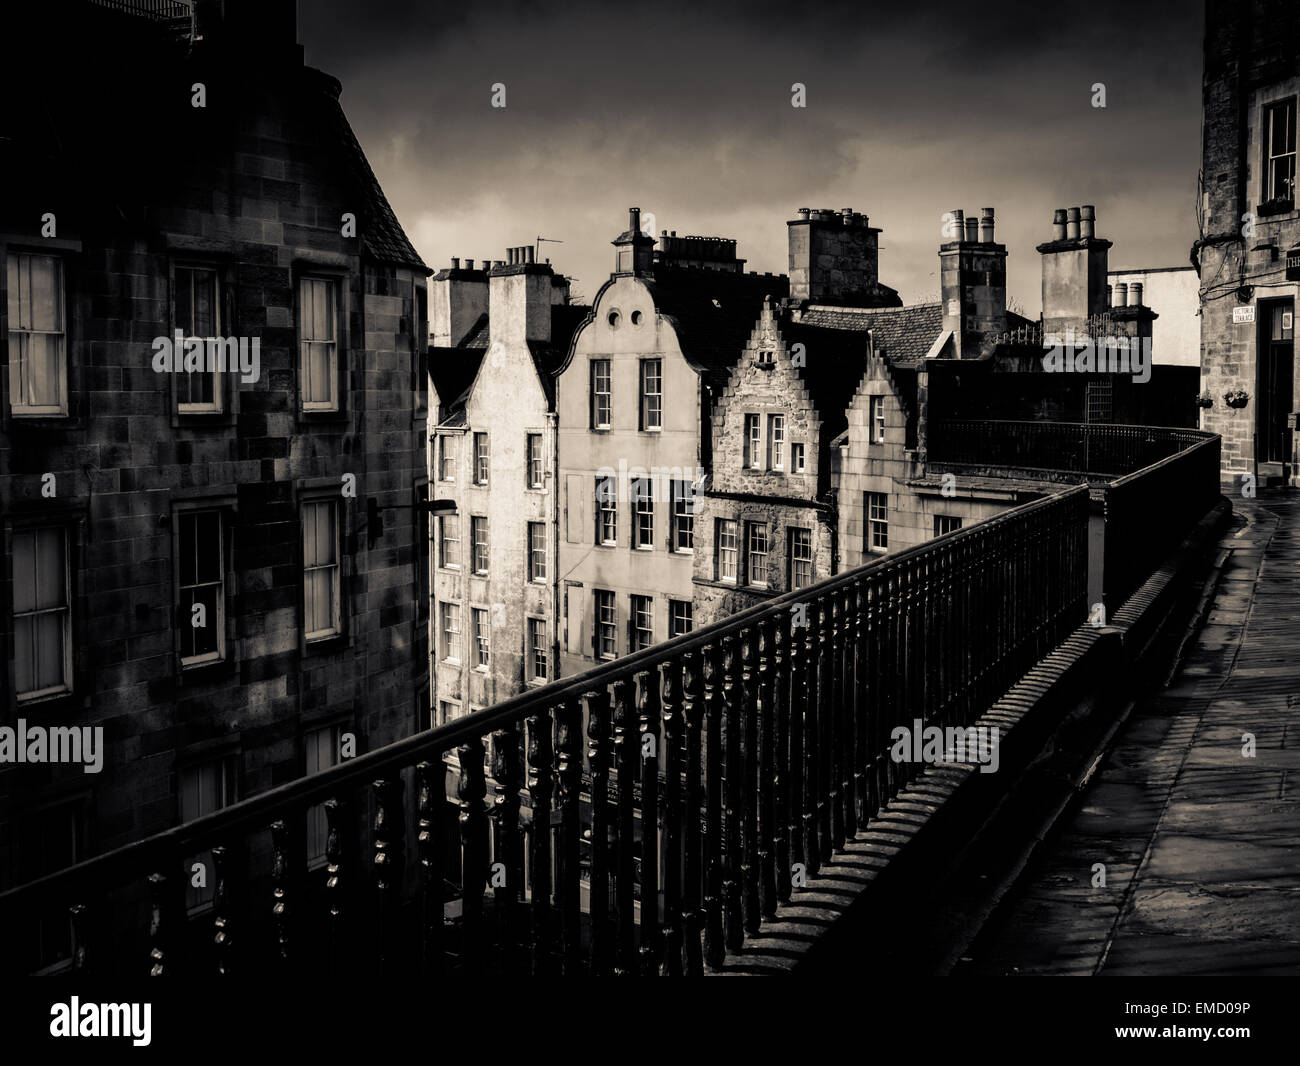 Immagine in bianco e nero di un antica strada di Edimburgo sotto un cielo tempestoso Foto Stock